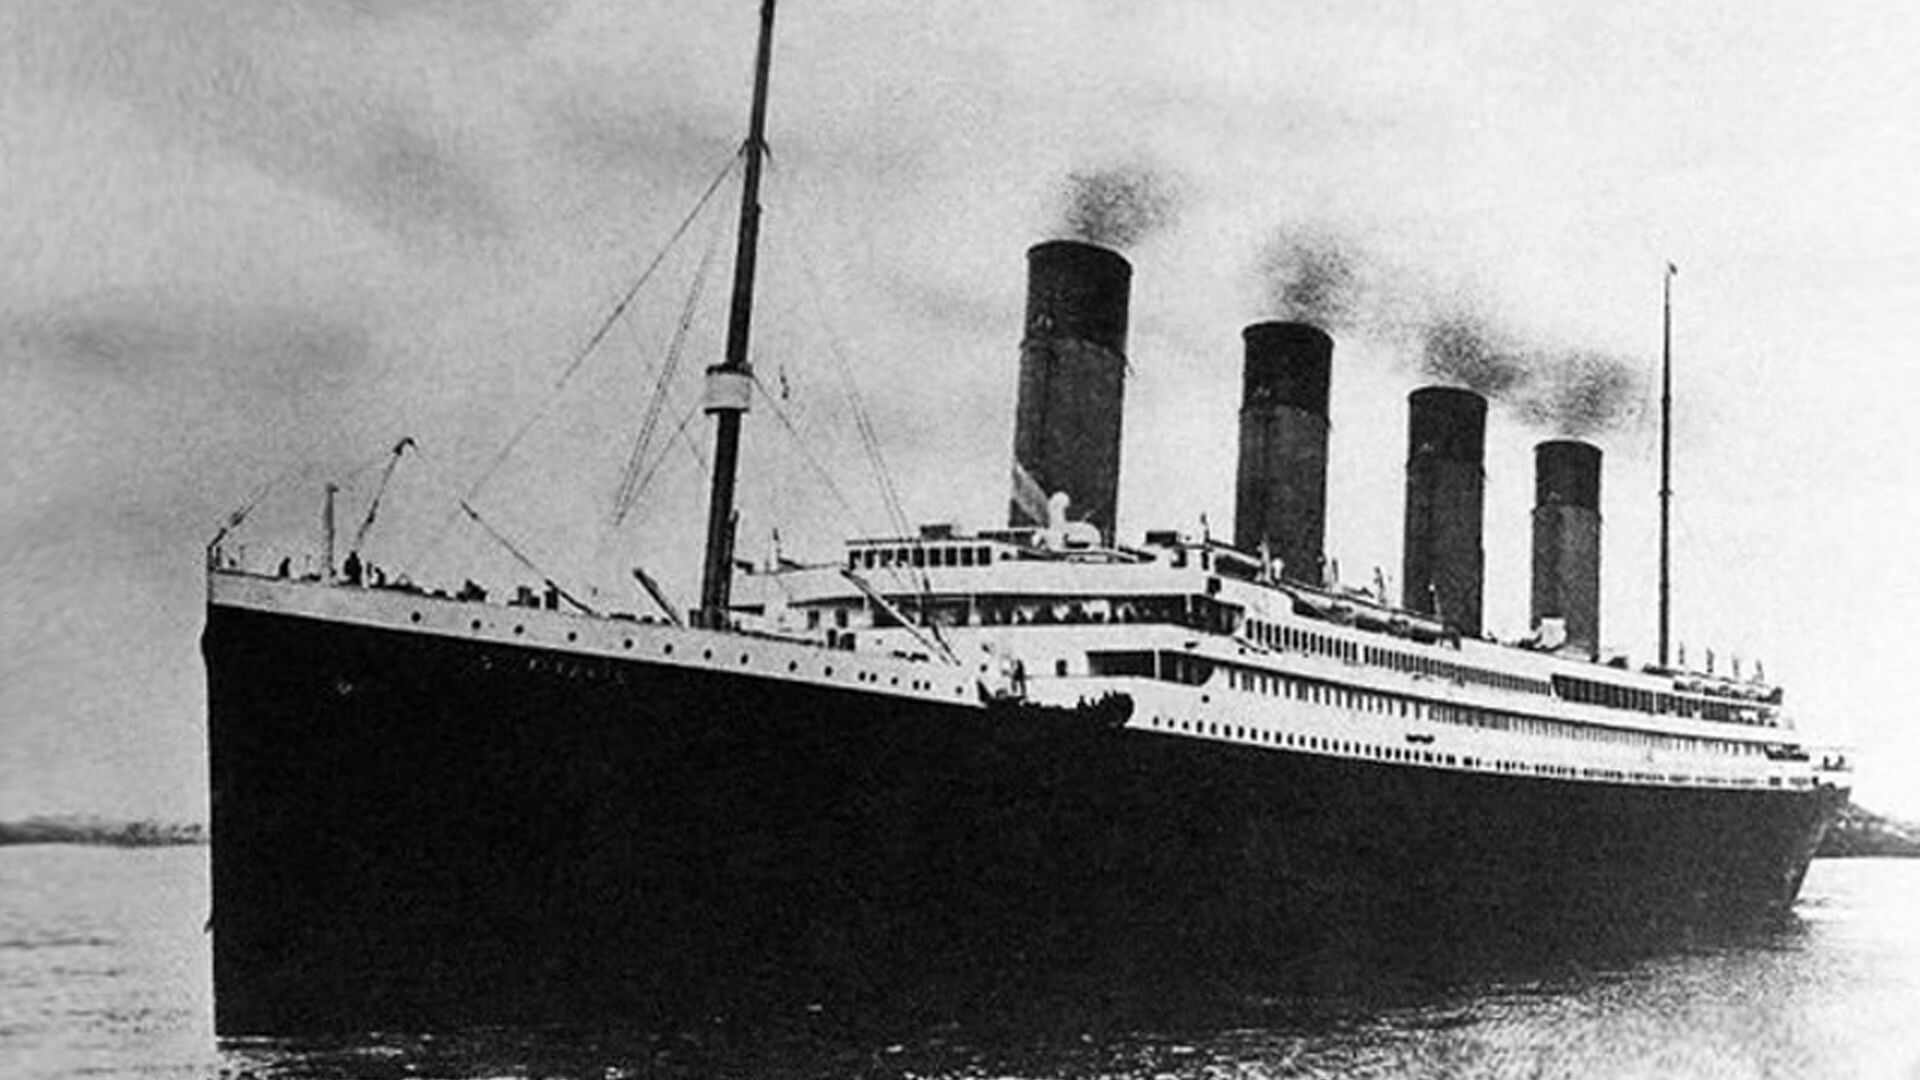 Титаник в Саутгемптоне 10 апреля 1912 года - РИА Новости, 1920, 21.11.2019